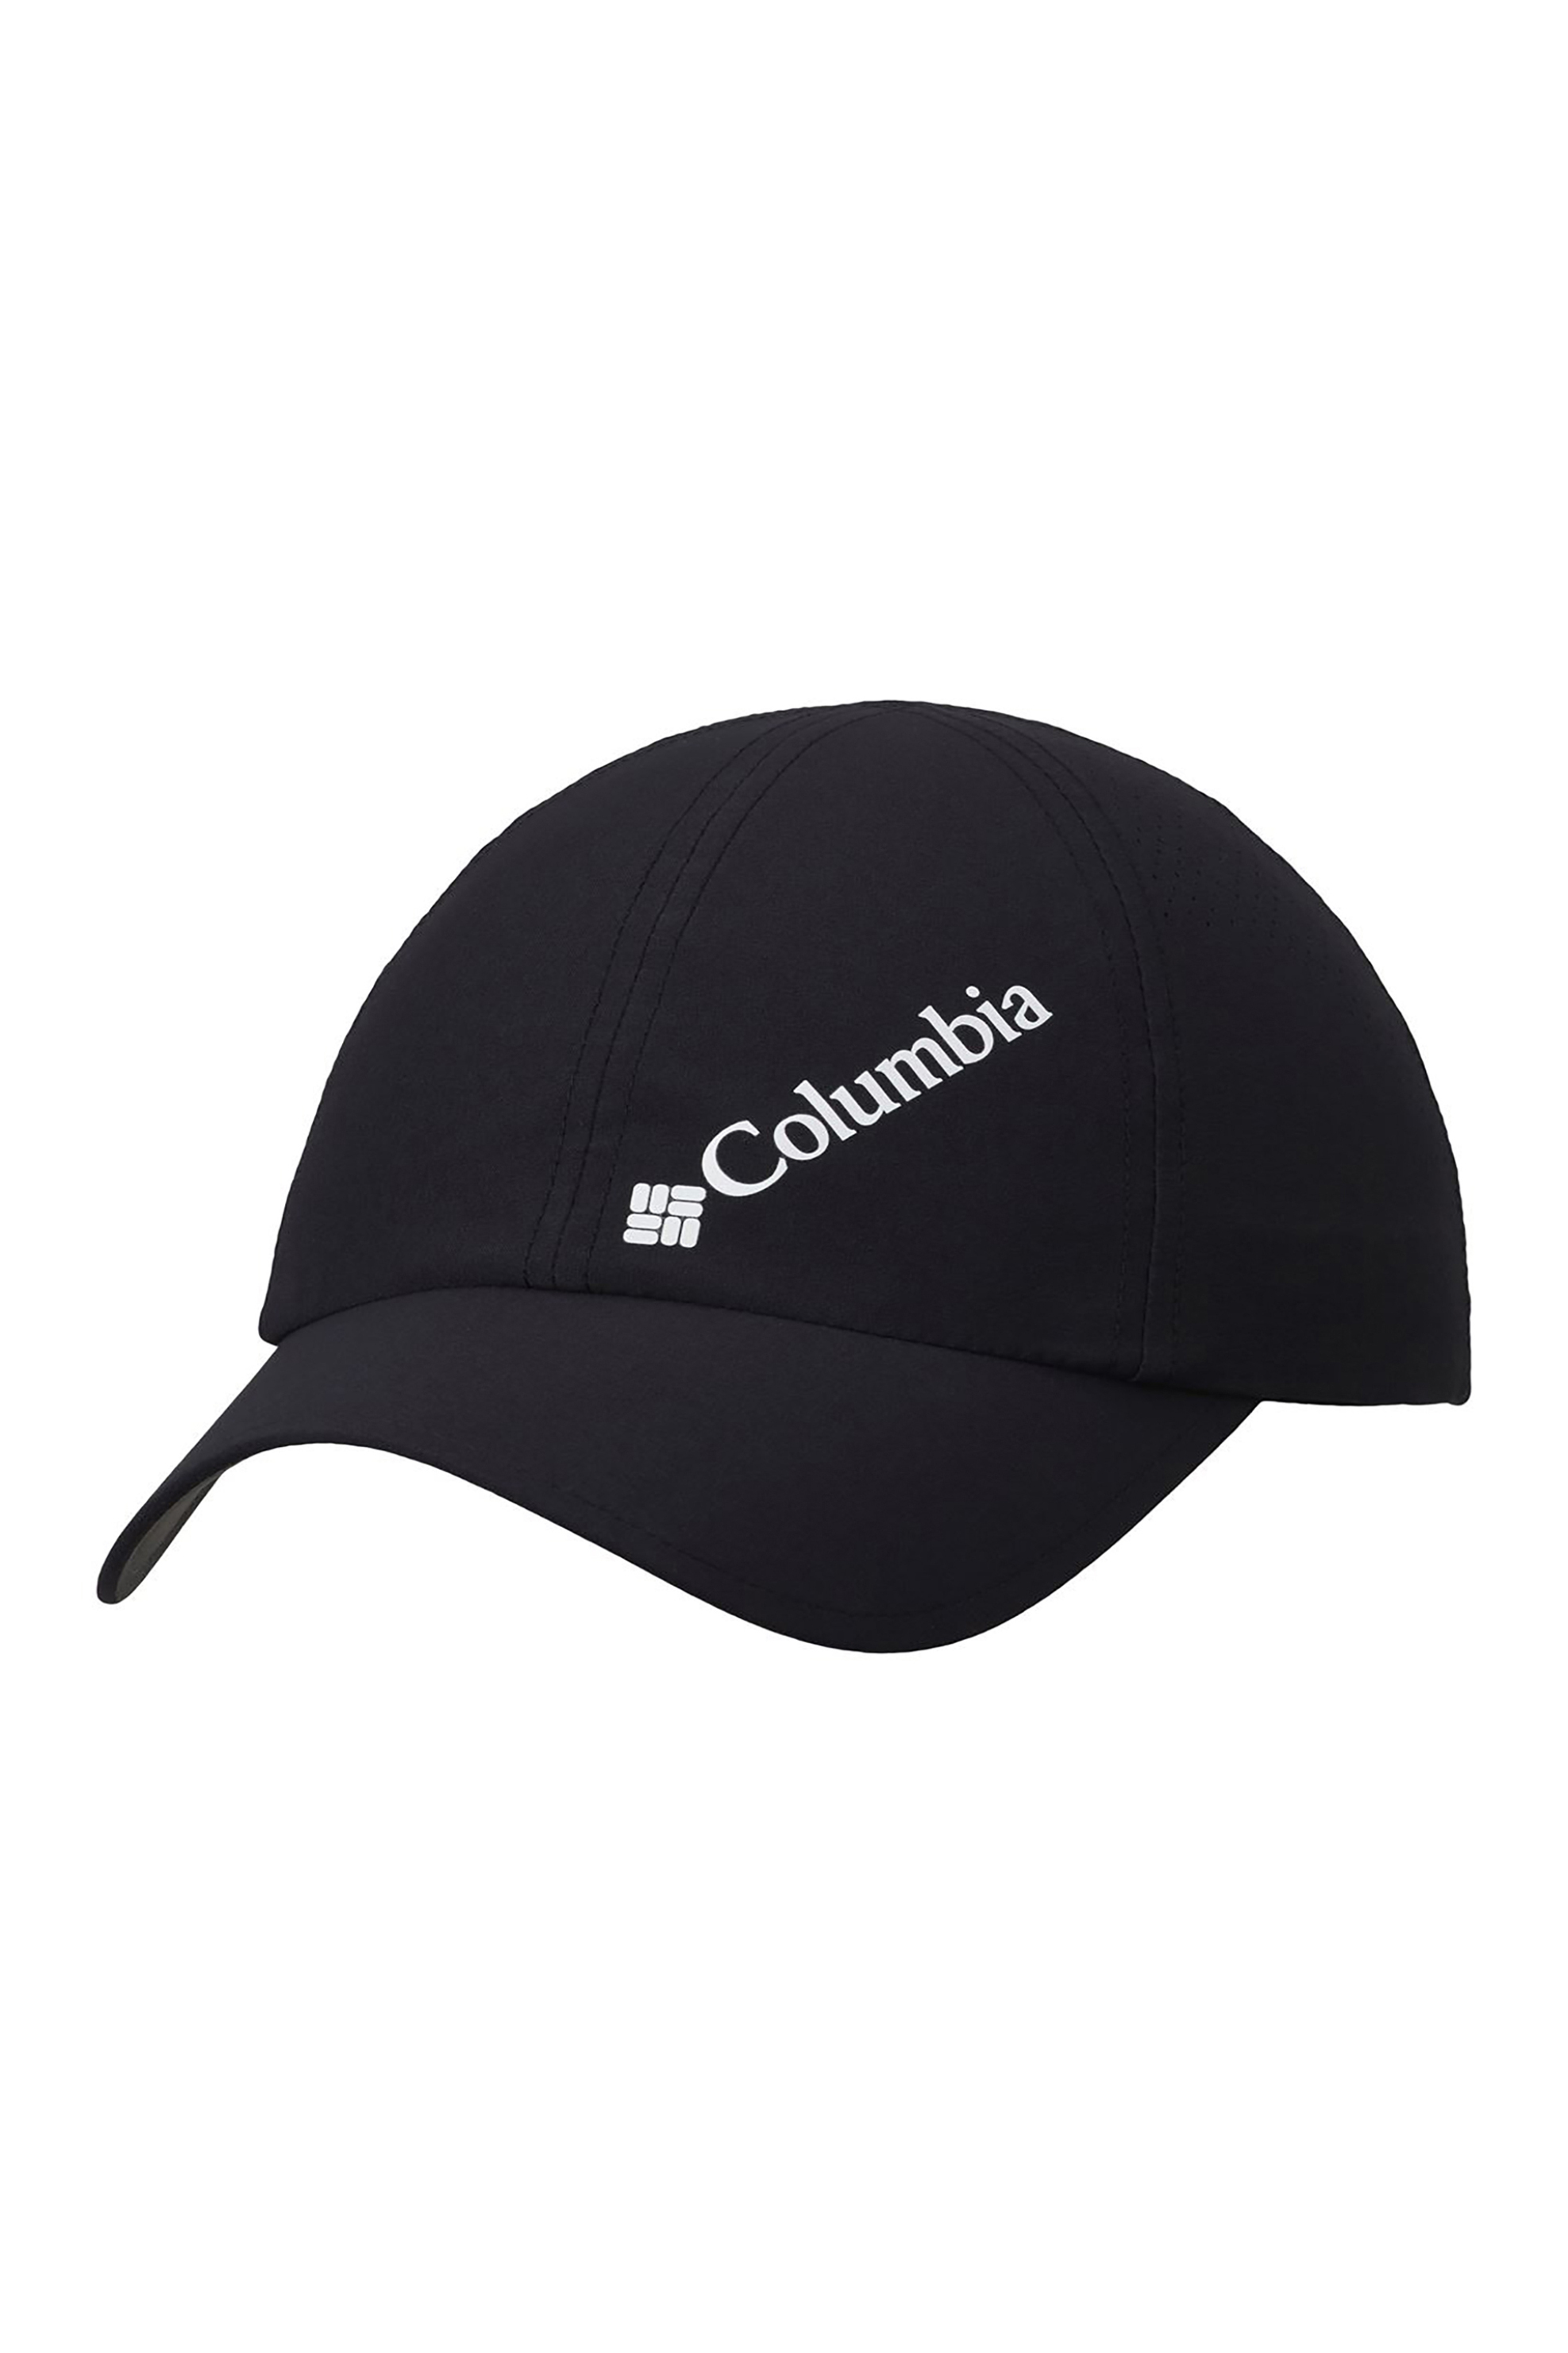 Ανδρική Μόδα > Ανδρικά Αξεσουάρ > Ανδρικά Καπέλα & Σκούφοι Columbia unisex καπέλο jockey με logo print ''Silver Ridge™ III'' - 1840071010TEM Μαύρο